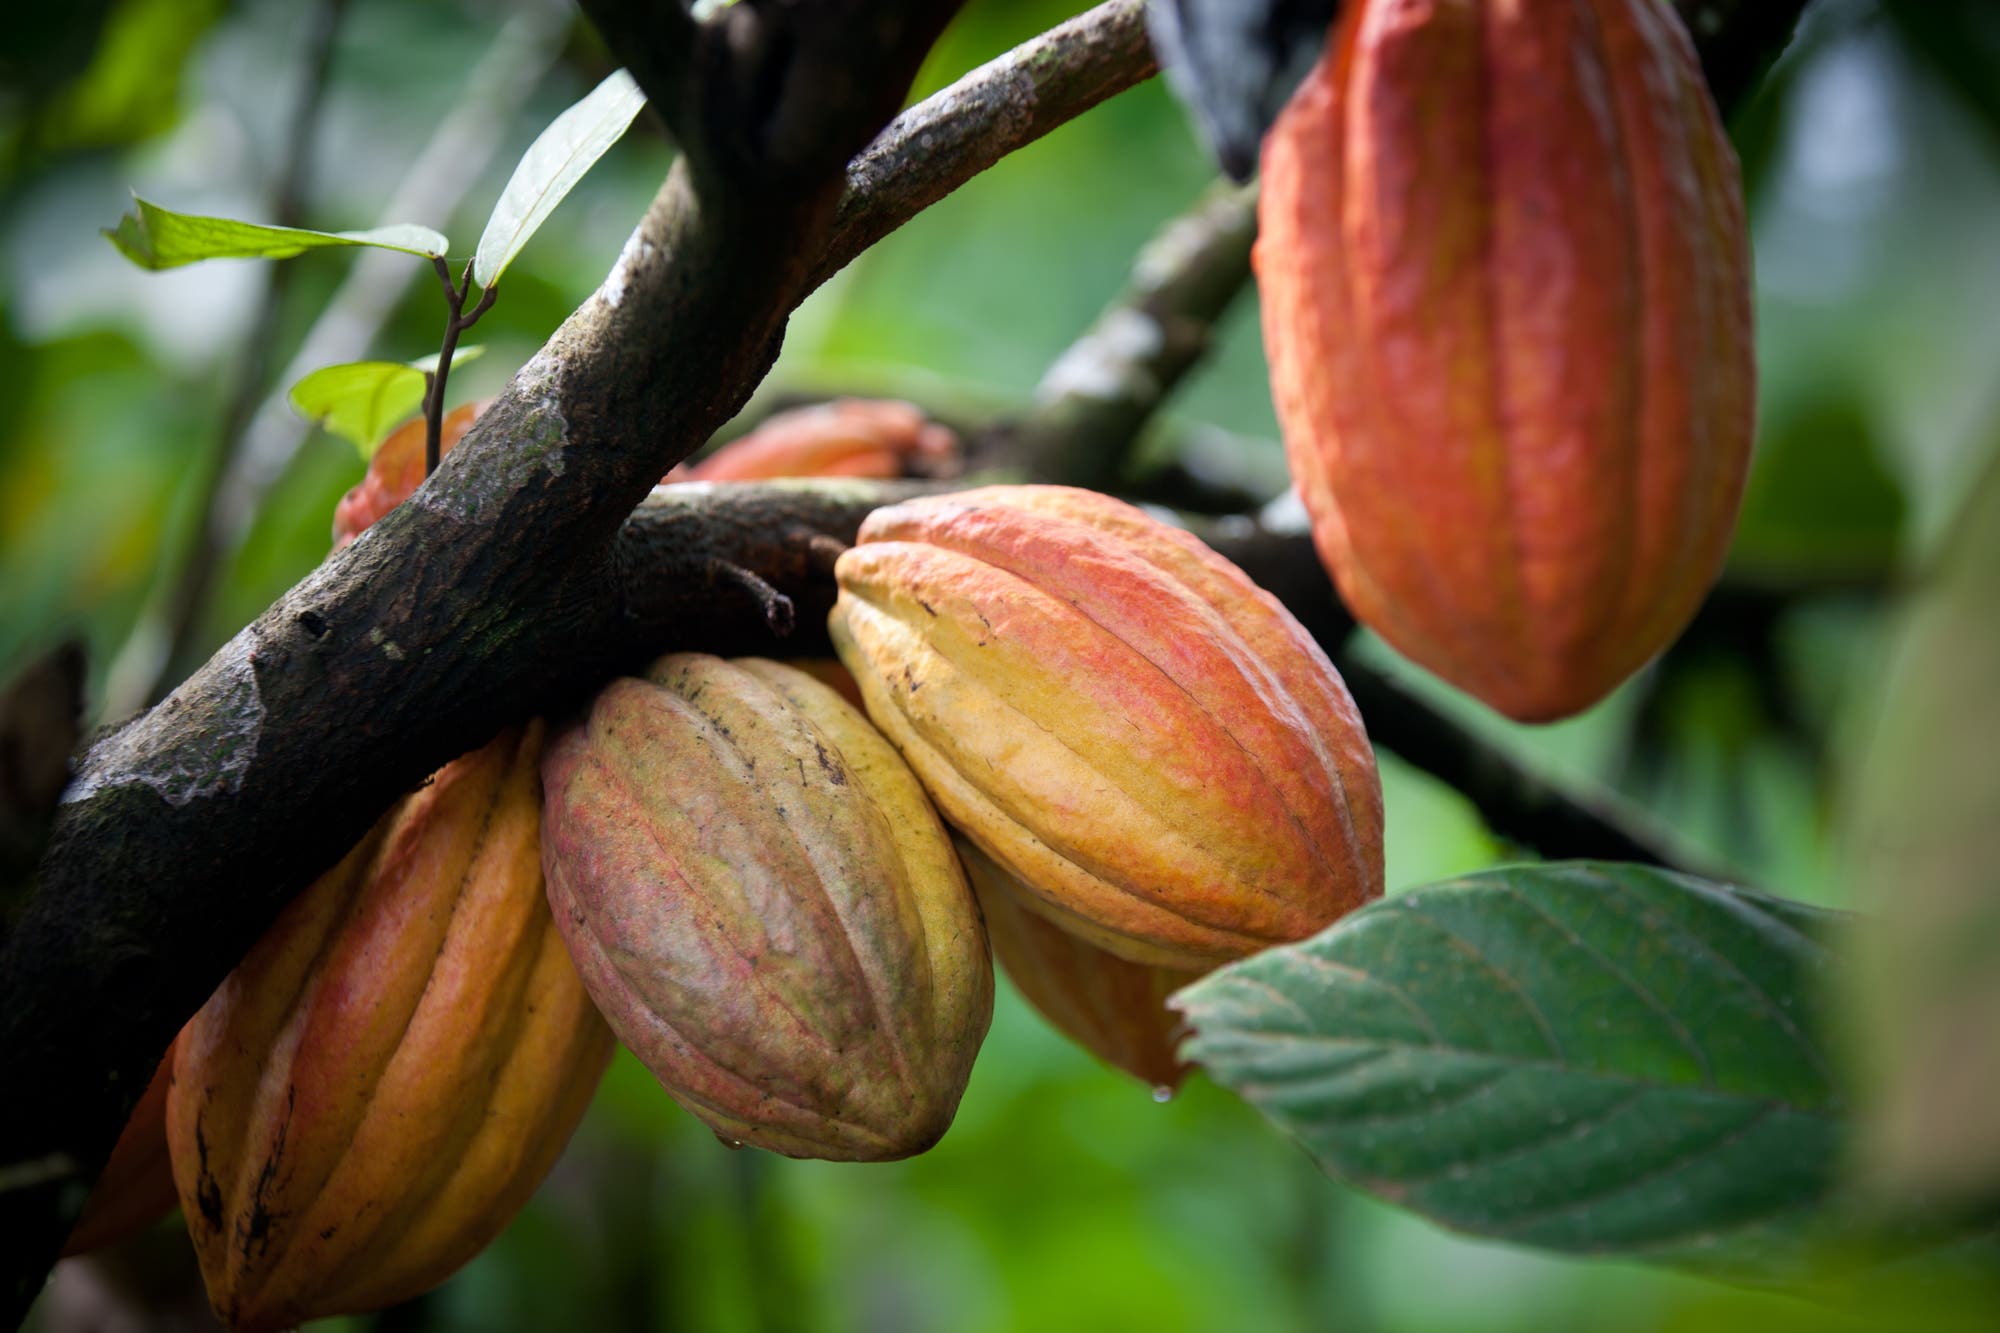 Kakaobäume sind anfällig für Krankheiten